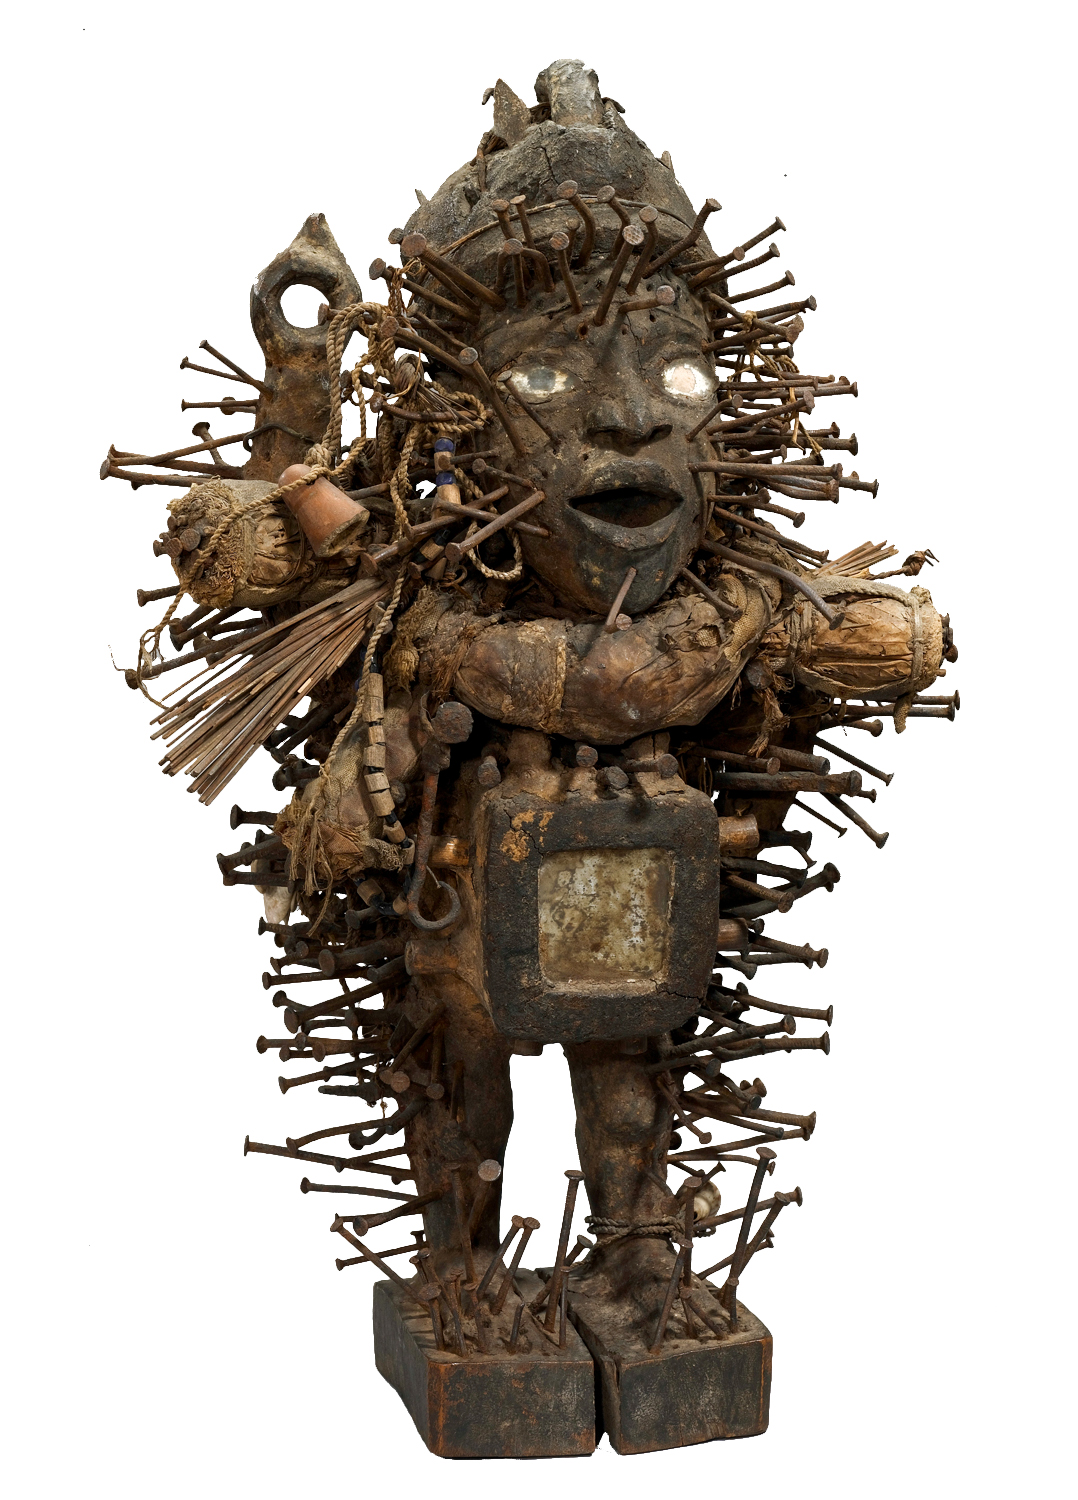 Figura Nkisi Nkondi, Kongo, R.D. Congo, 1900-1950, madeira, pregos, metal, texteis, vidro, outros